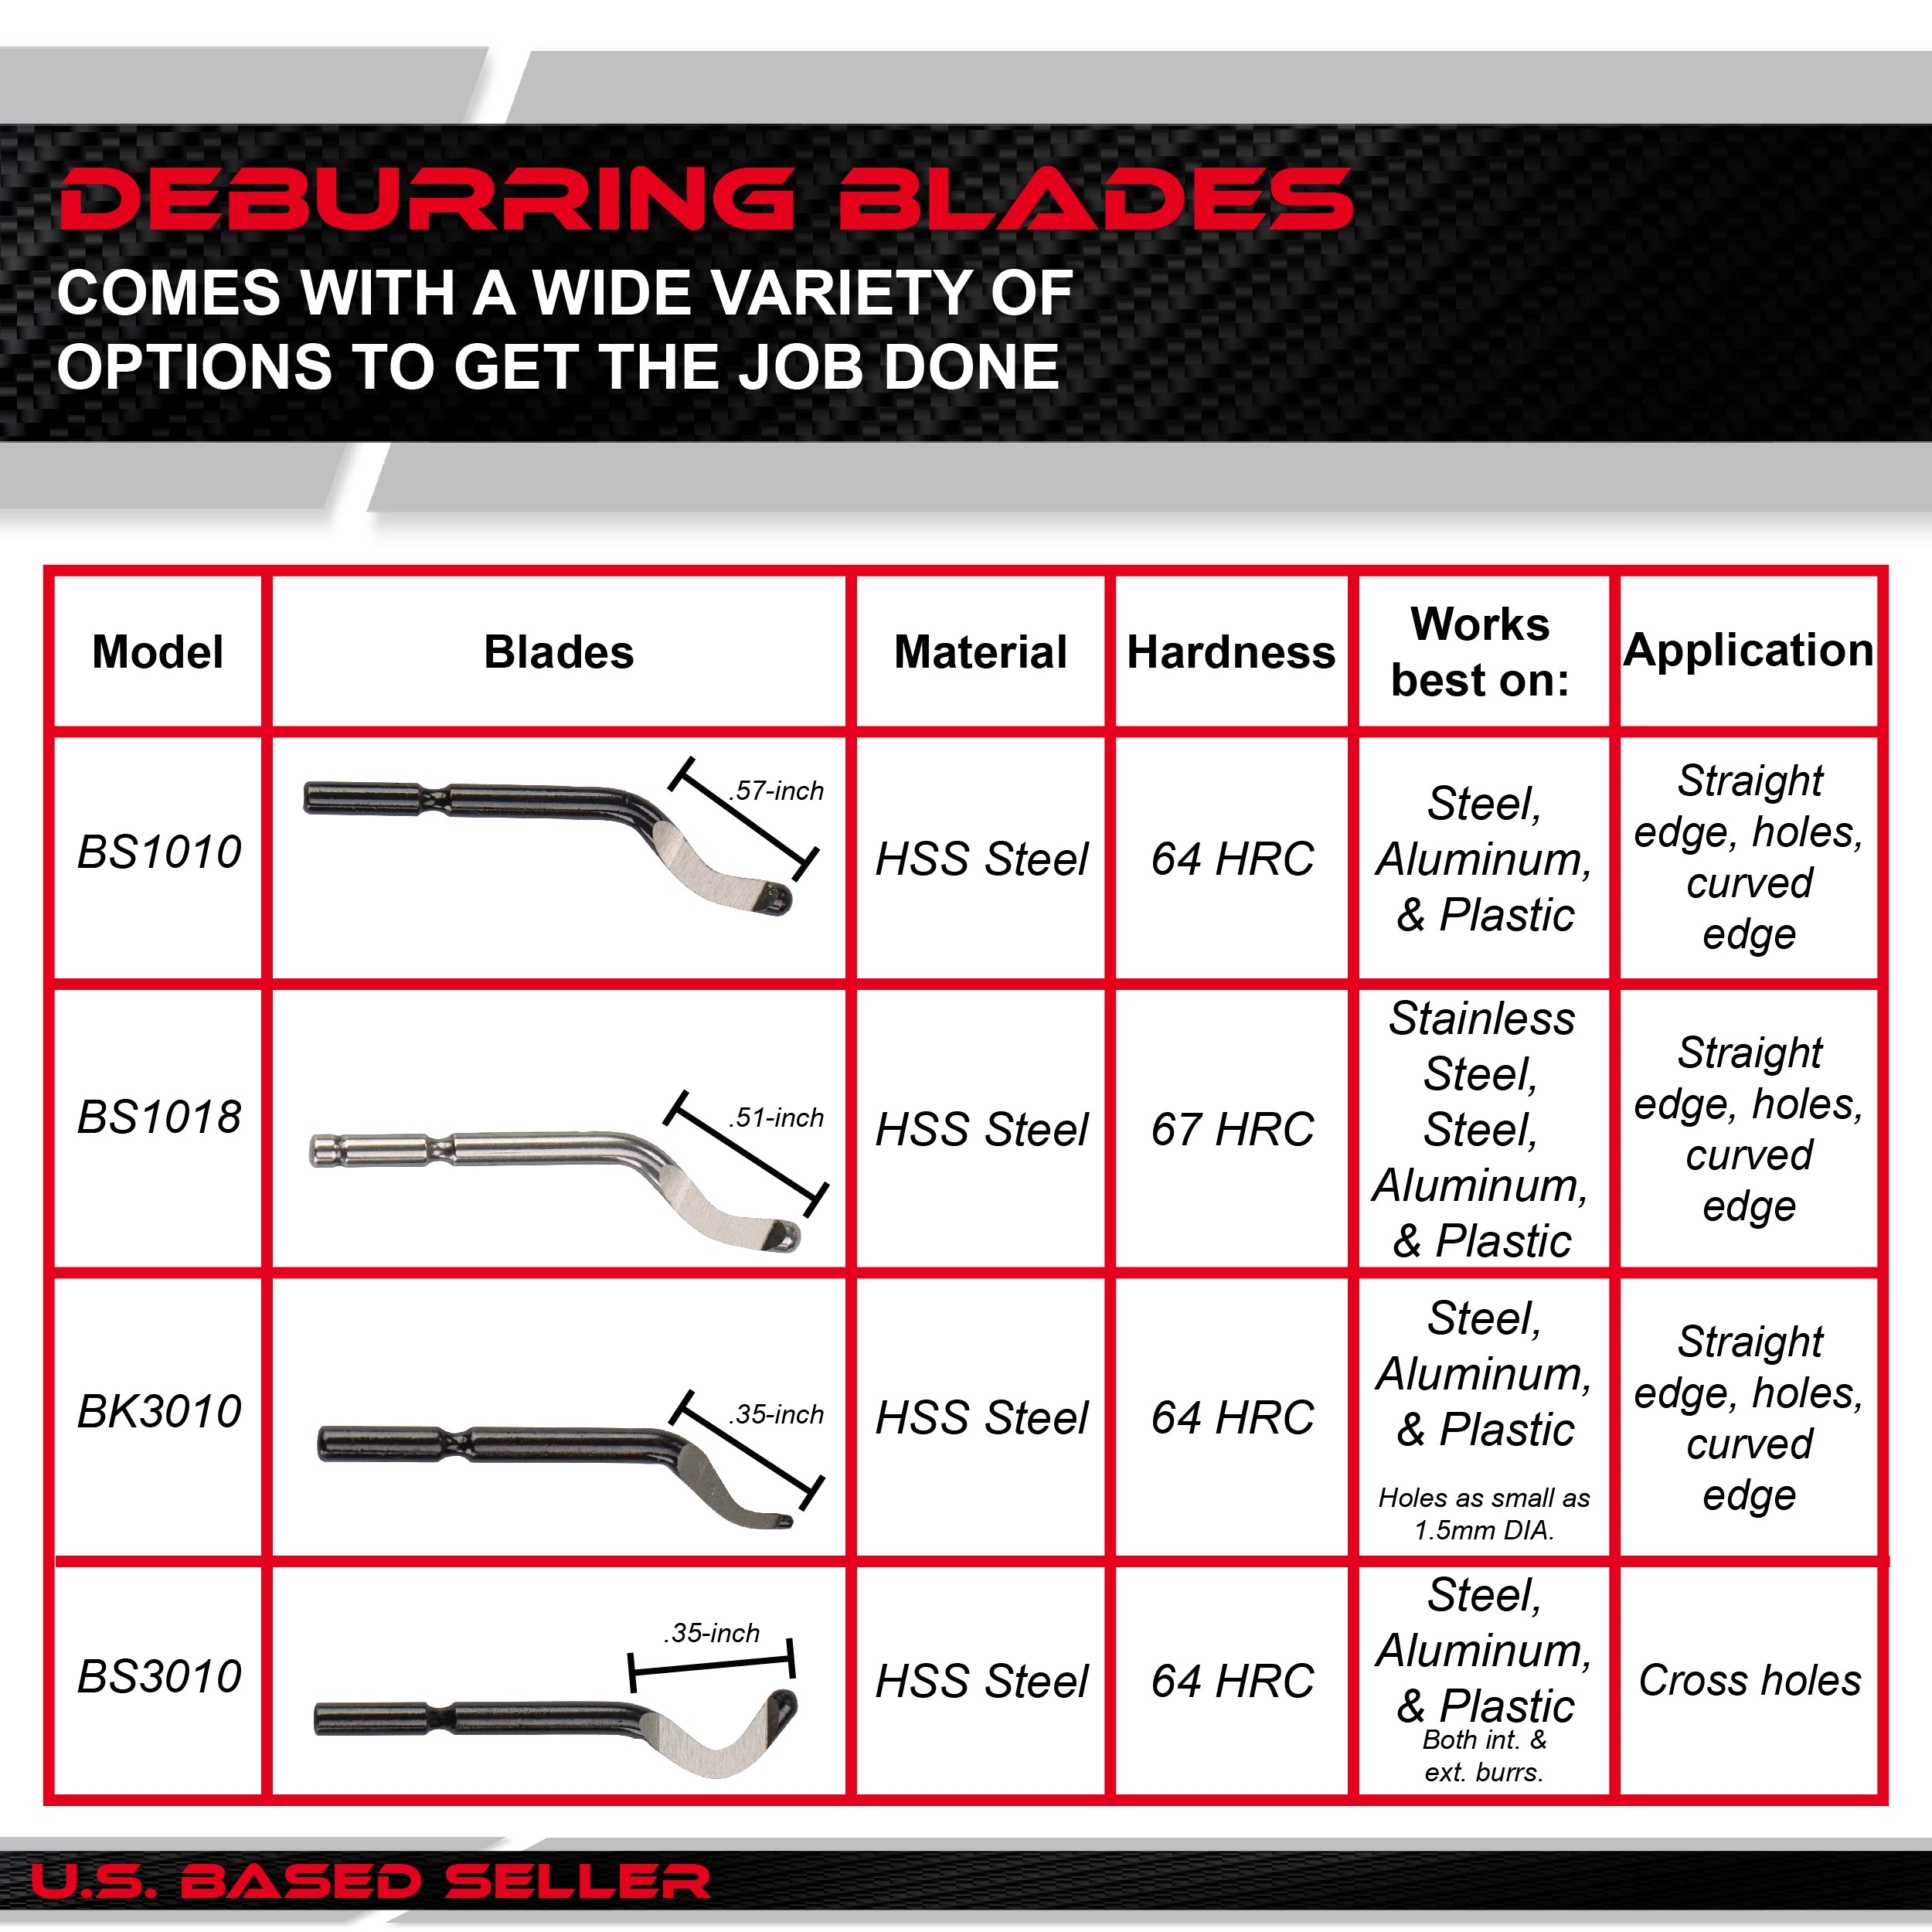 Resin Deburring Tool for Plastic or Metal - 42p Deburring Tool Blades